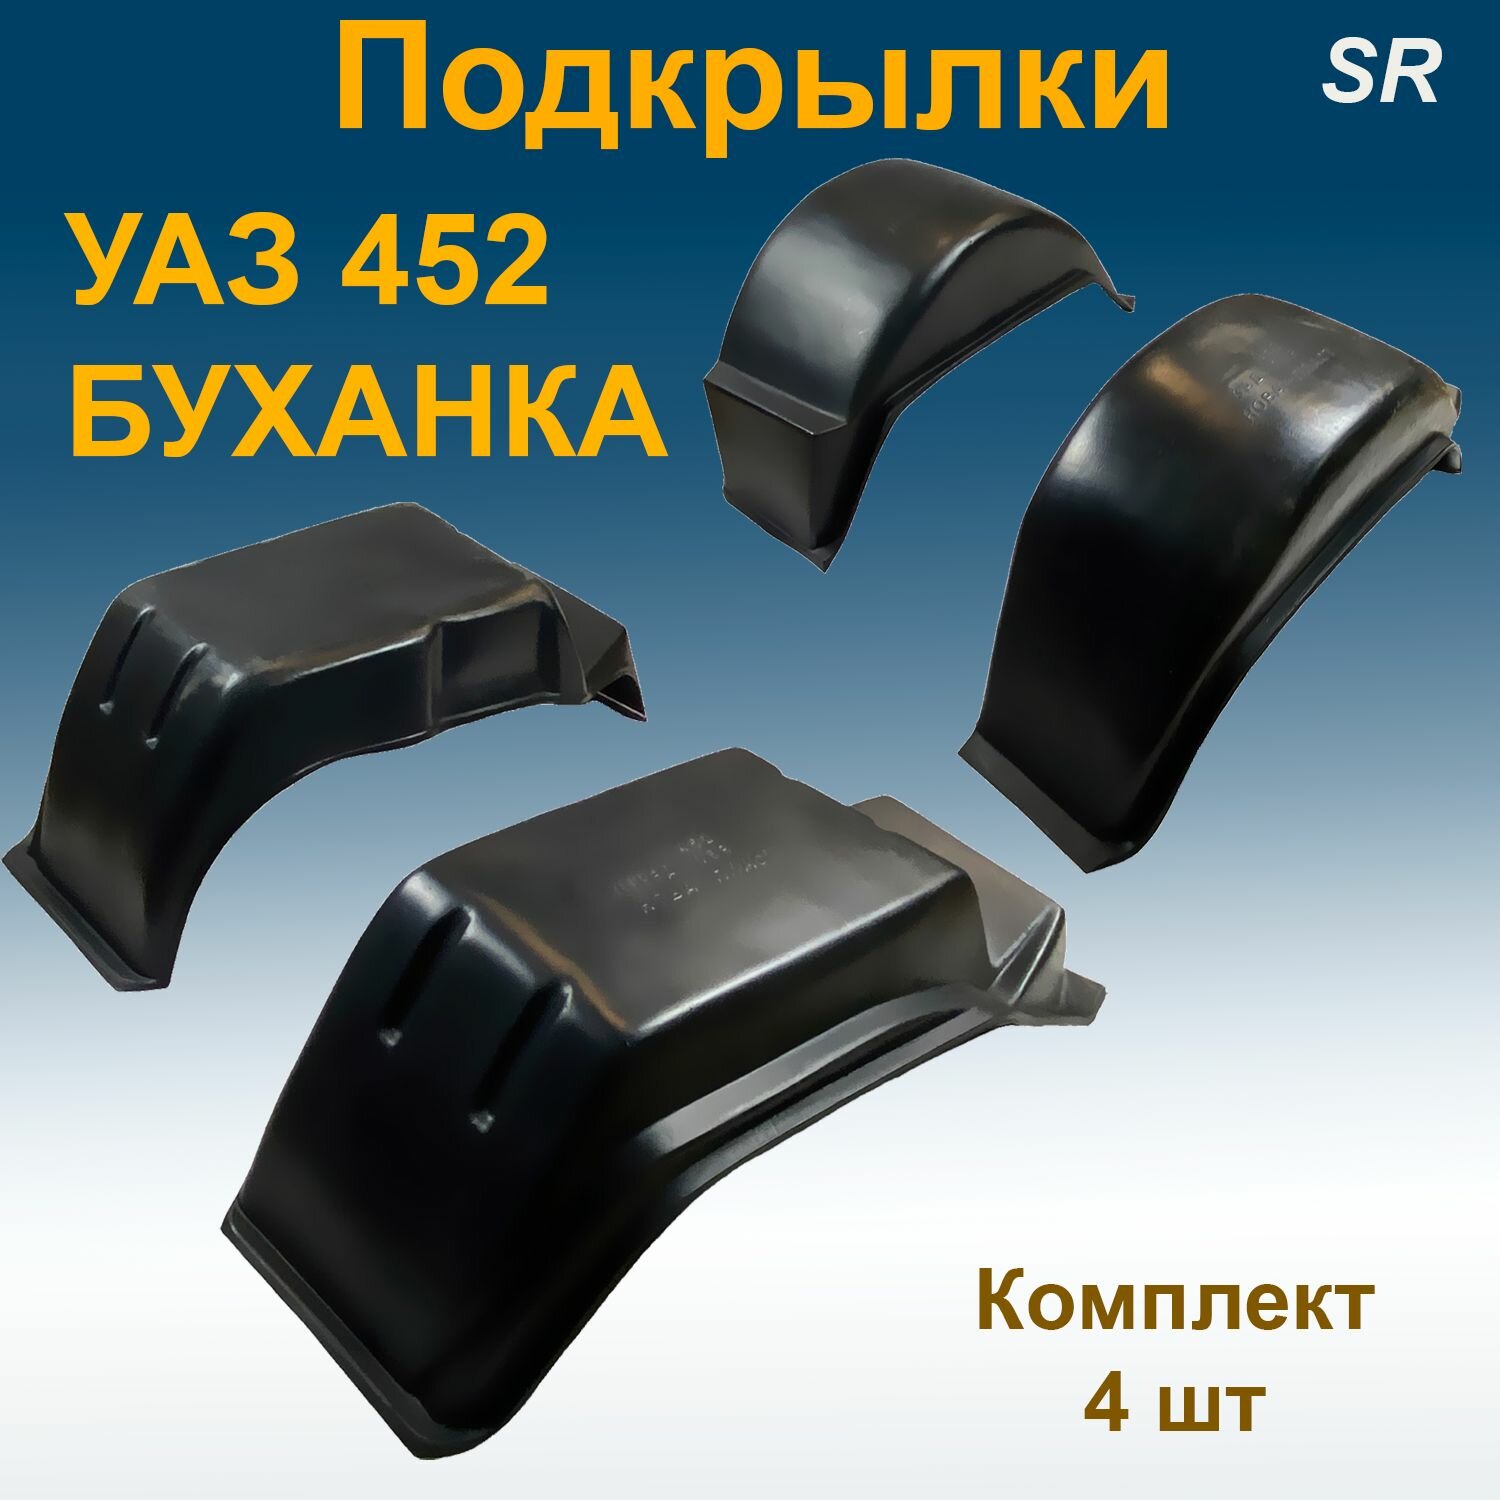 Подкрылки передние + задние для УАЗ 452 буханка Star 4 шт